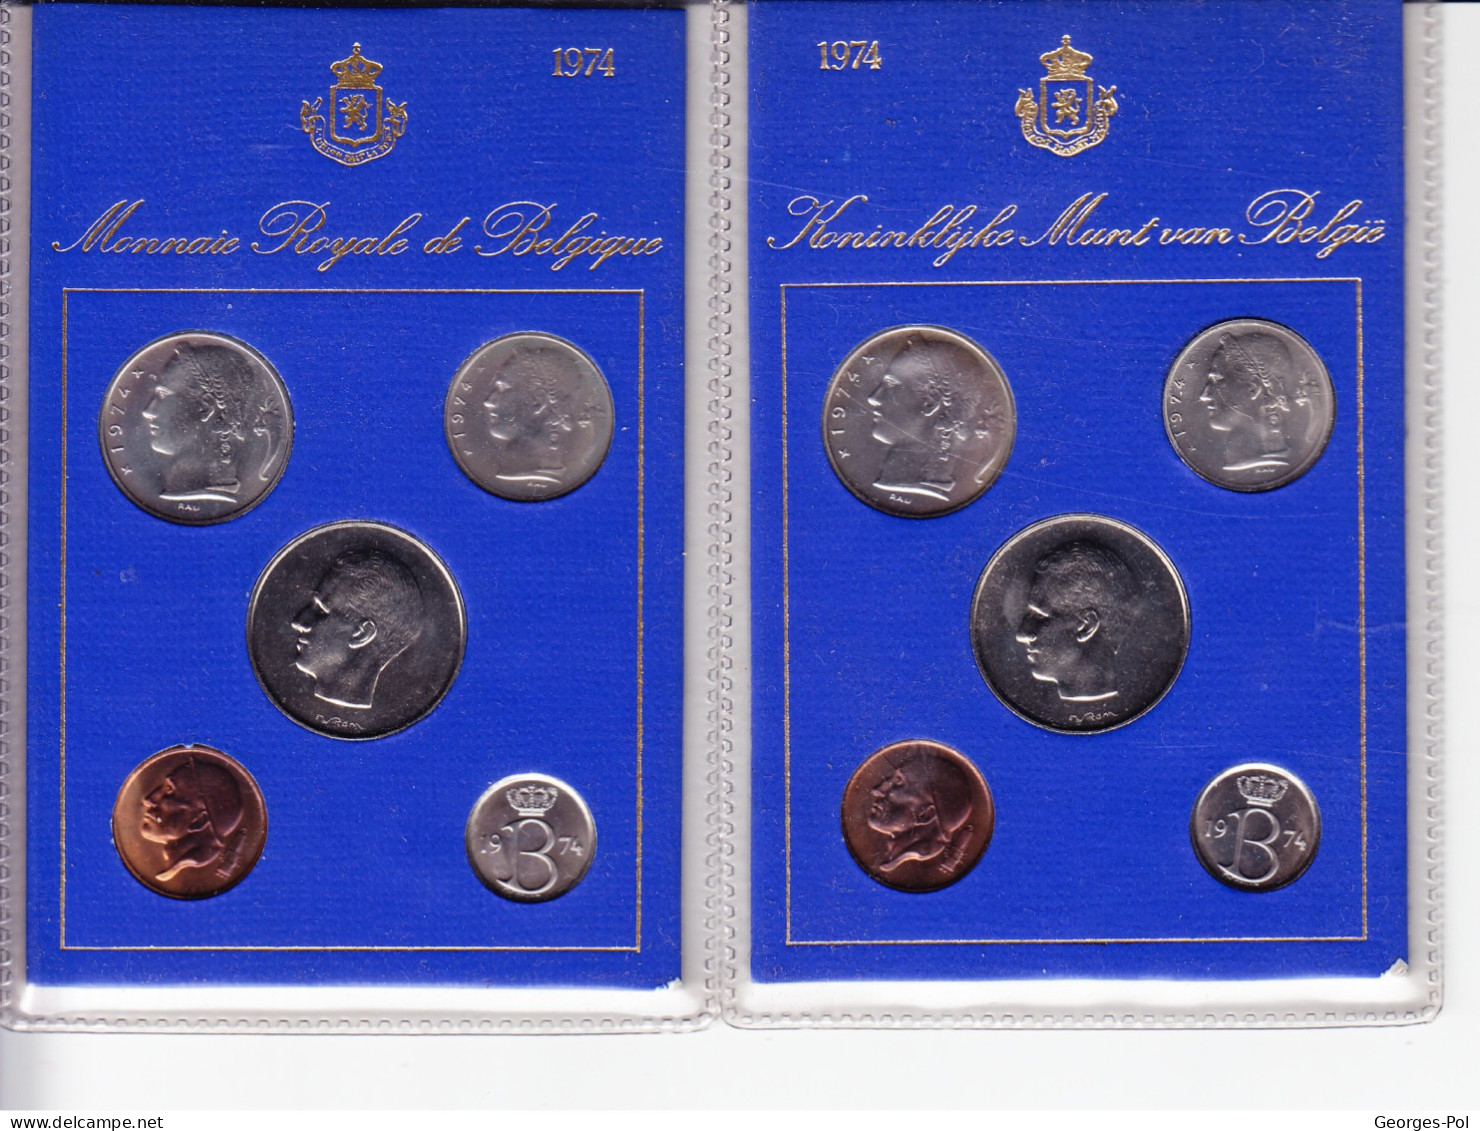 Monnaie Royale De Belgique 1974 Koninklijke Munt Van België. 2 Cartes De 5 Pièces Non Circulées - FDEC, BU, BE & Münzkassetten